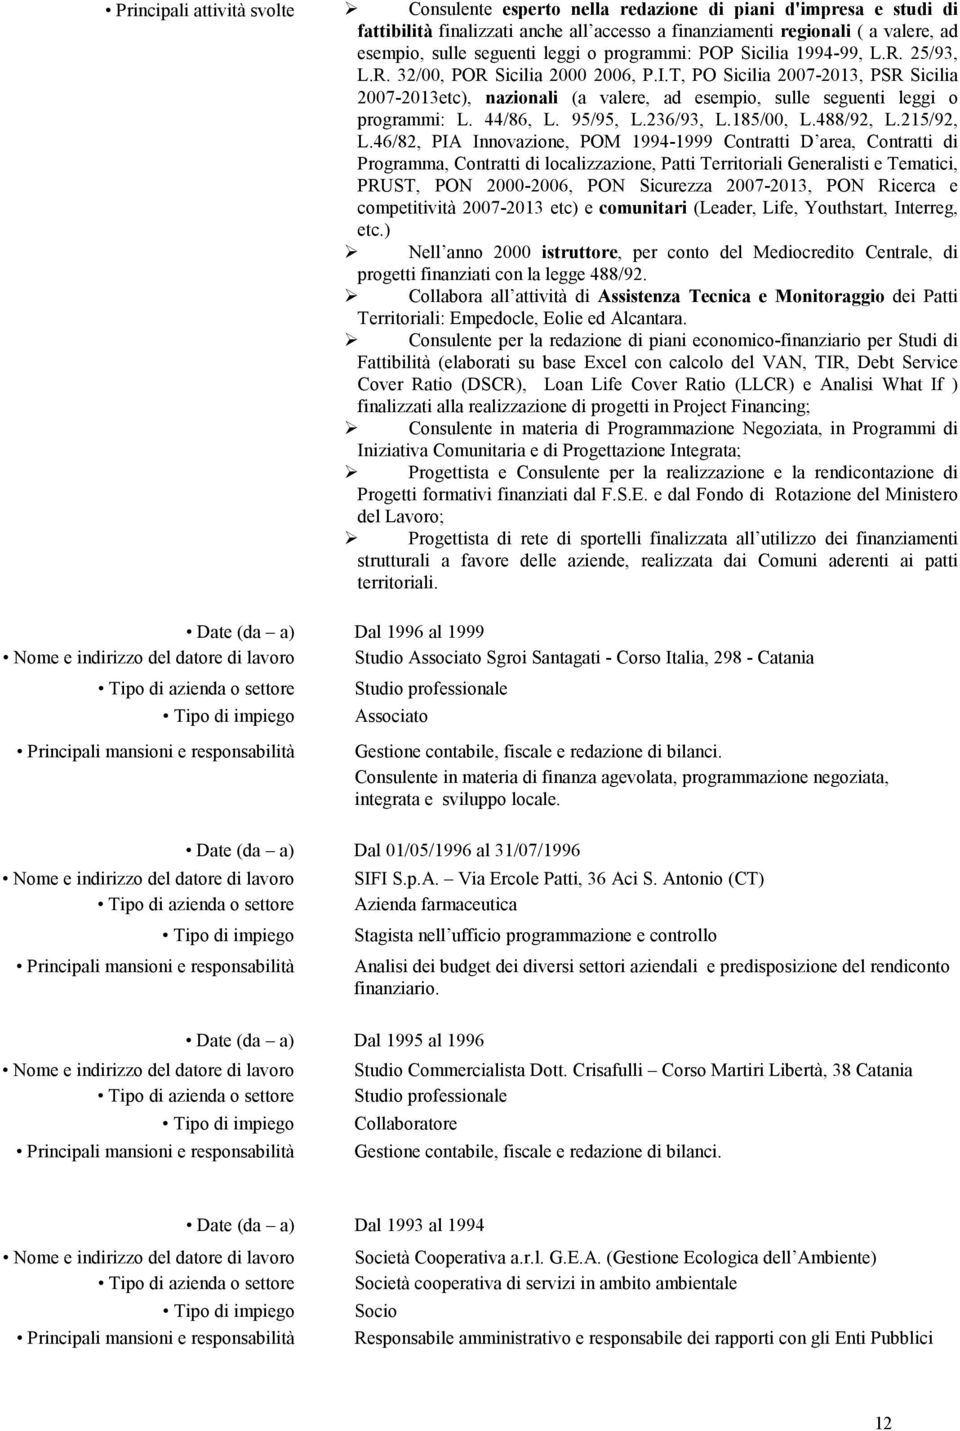 T, PO Sicilia 2007-2013, PSR Sicilia 2007-2013etc), nazionali (a valere, ad esempio, sulle seguenti leggi o programmi: L. 44/86, L. 95/95, L.236/93, L.185/00, L.488/92, L.215/92, L.